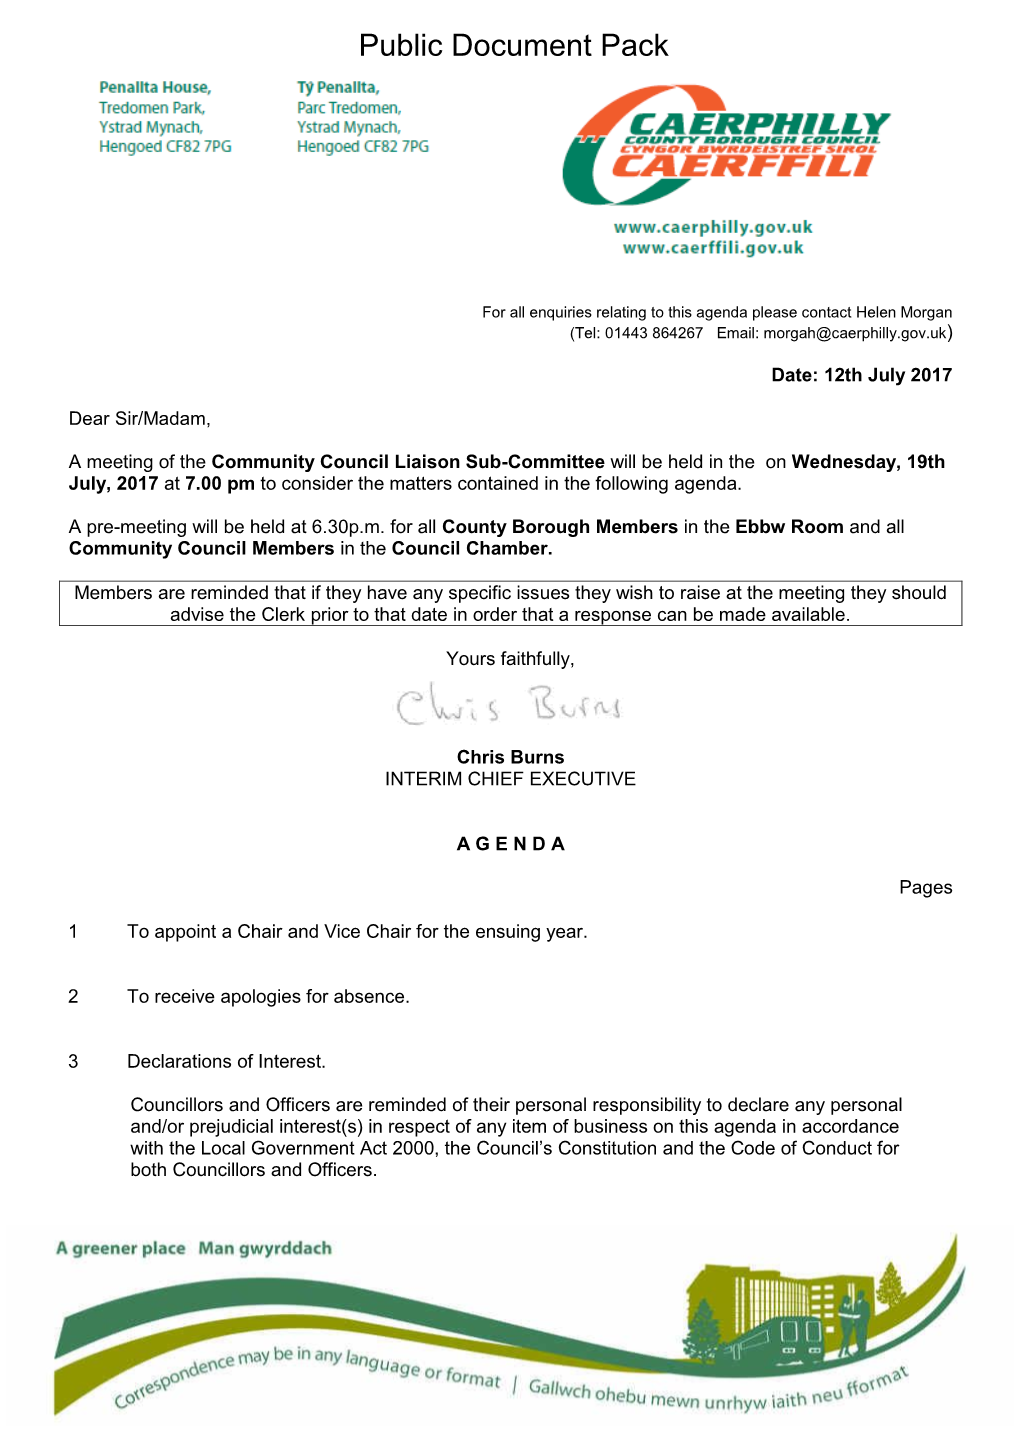 (Public Pack)Agenda Document for Community Council Liaison Sub